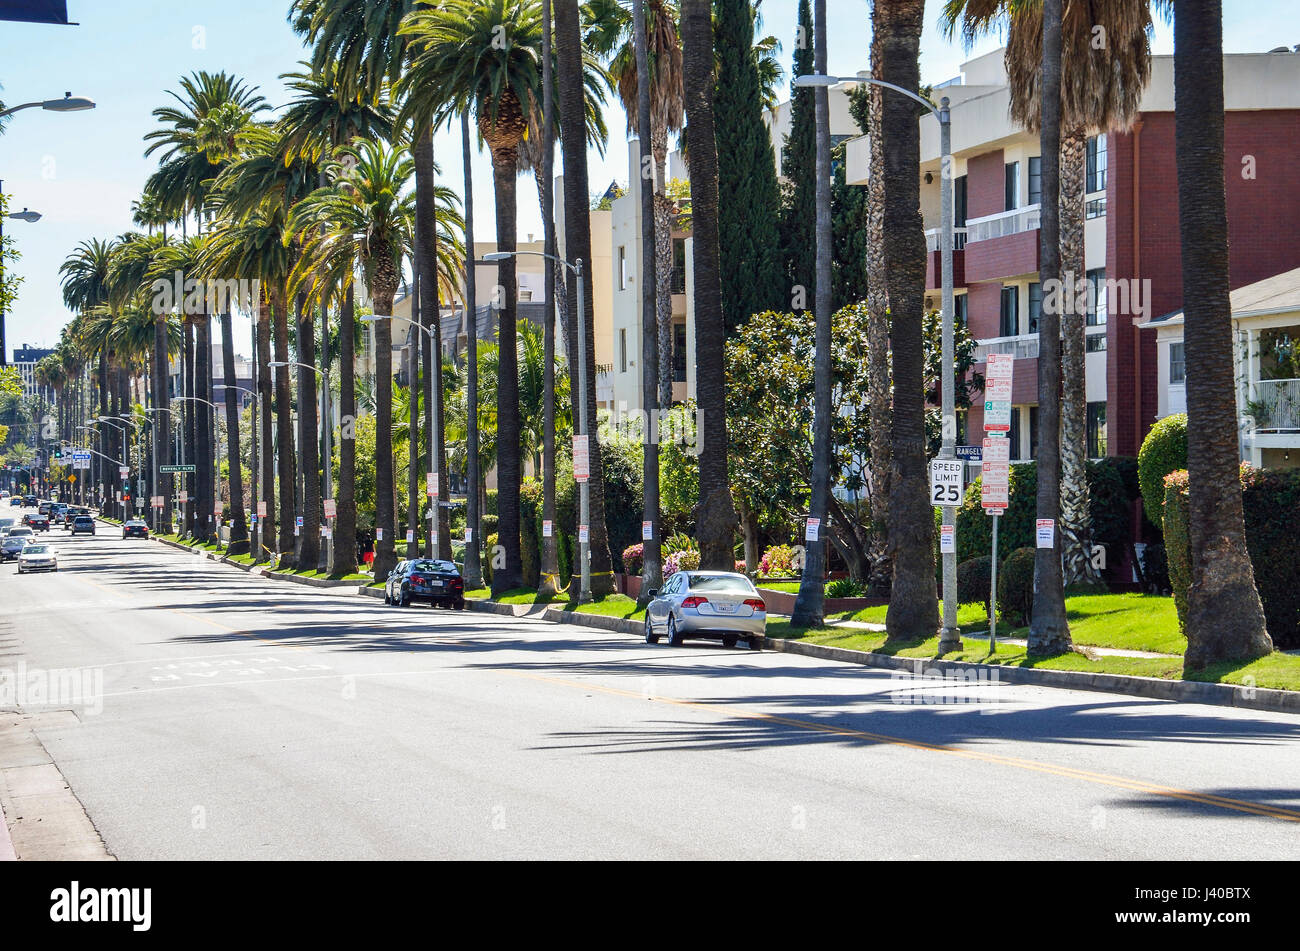 Los Angeles, EE.UU. - Marzo 9, 2014: Rangely Beverly street en el centro de Los Ángeles con palmeras y casas residenciales Foto de stock